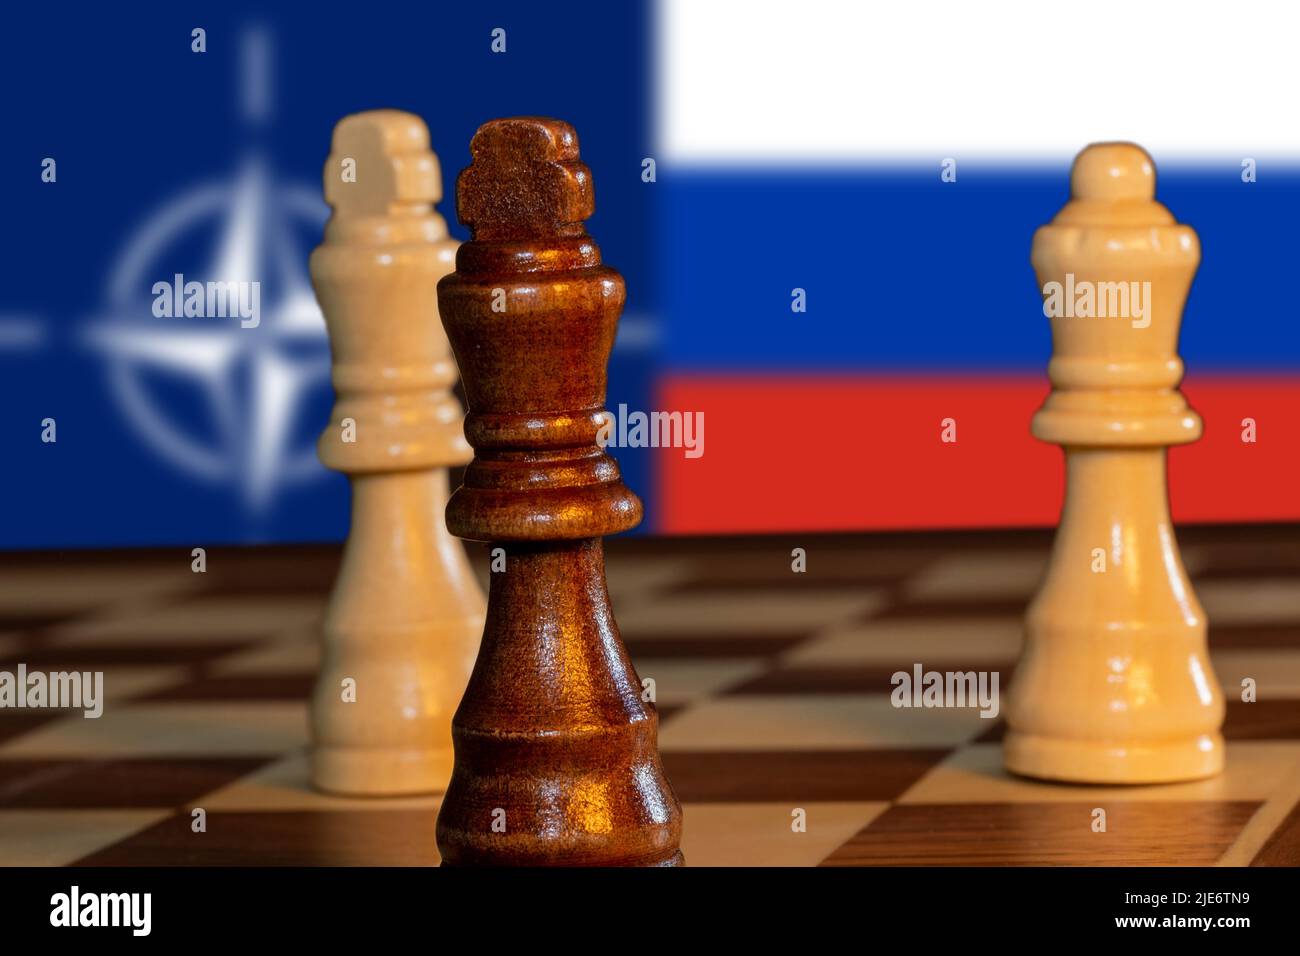 Symbolbild: Pattsituation im Schach mit den Flaggen der Nato und von Russland im Hintergrund Stock Photo